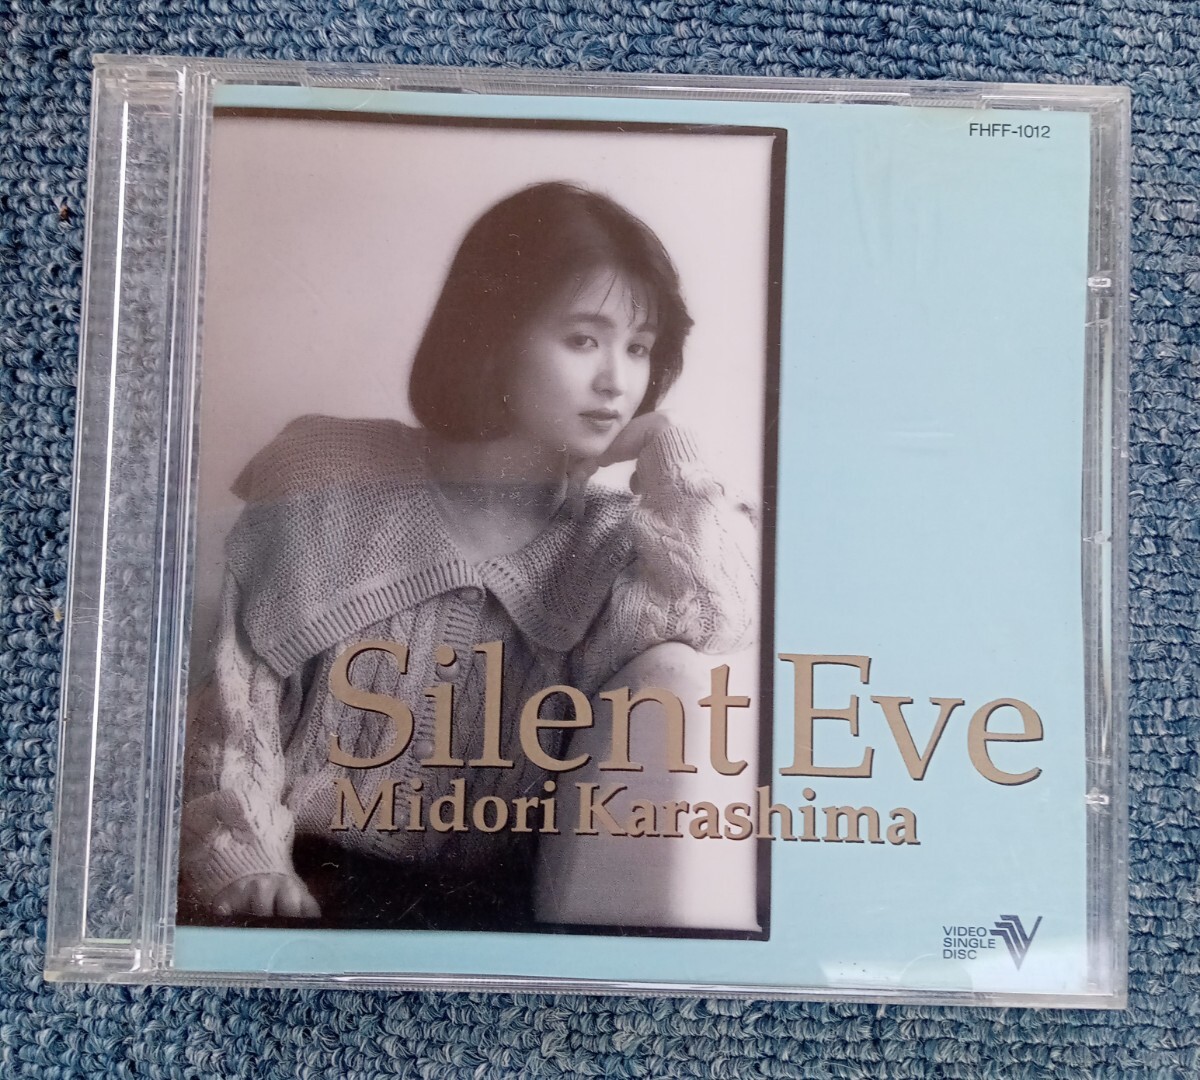 CDV Karashima Midori Silent Eve